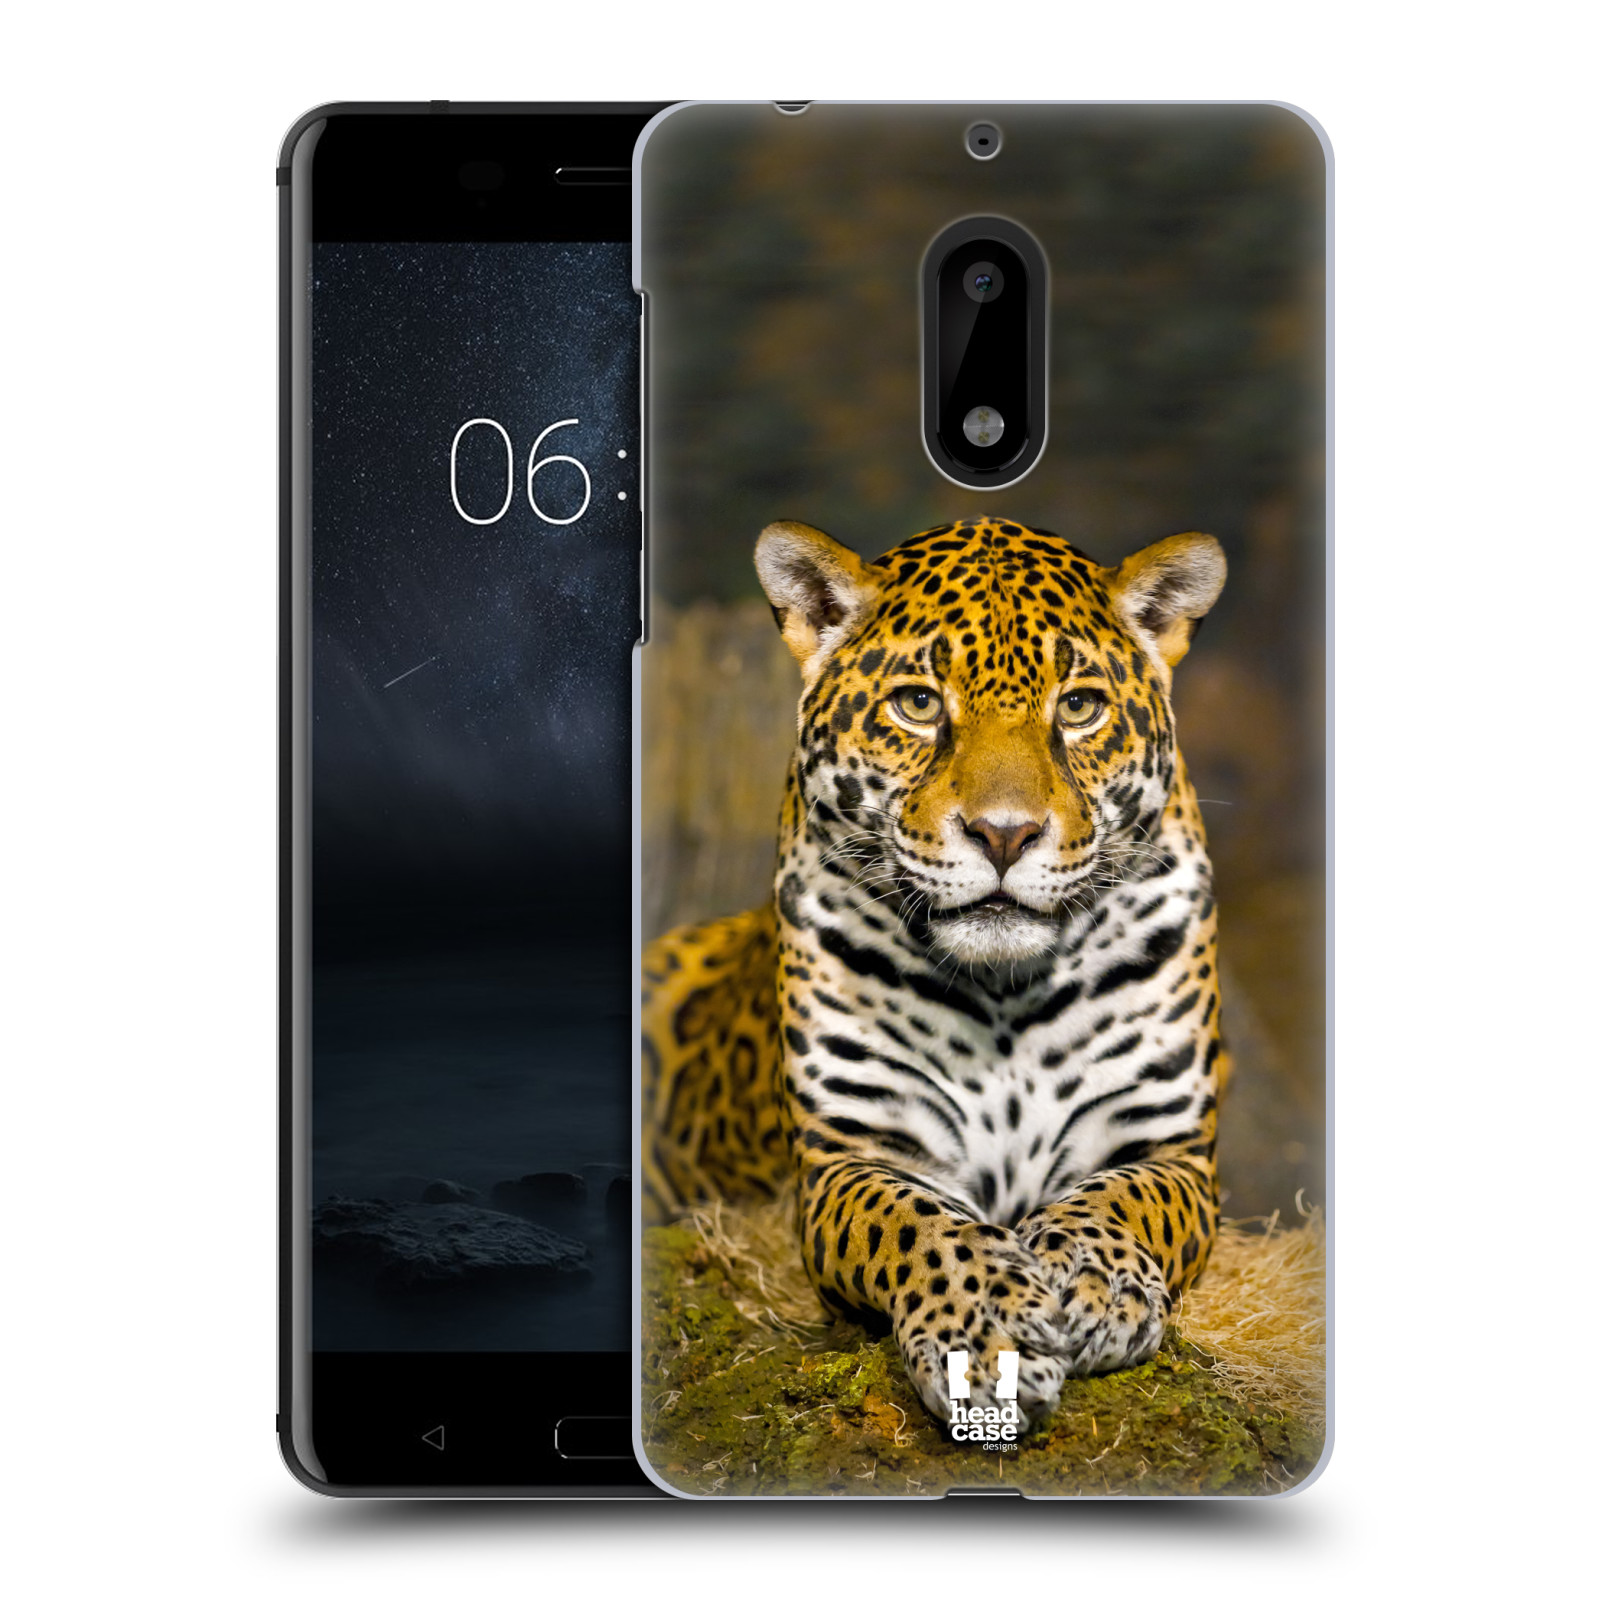 HEAD CASE plastový obal na mobil Nokia 6 vzor slavná zvířata foto jaguár